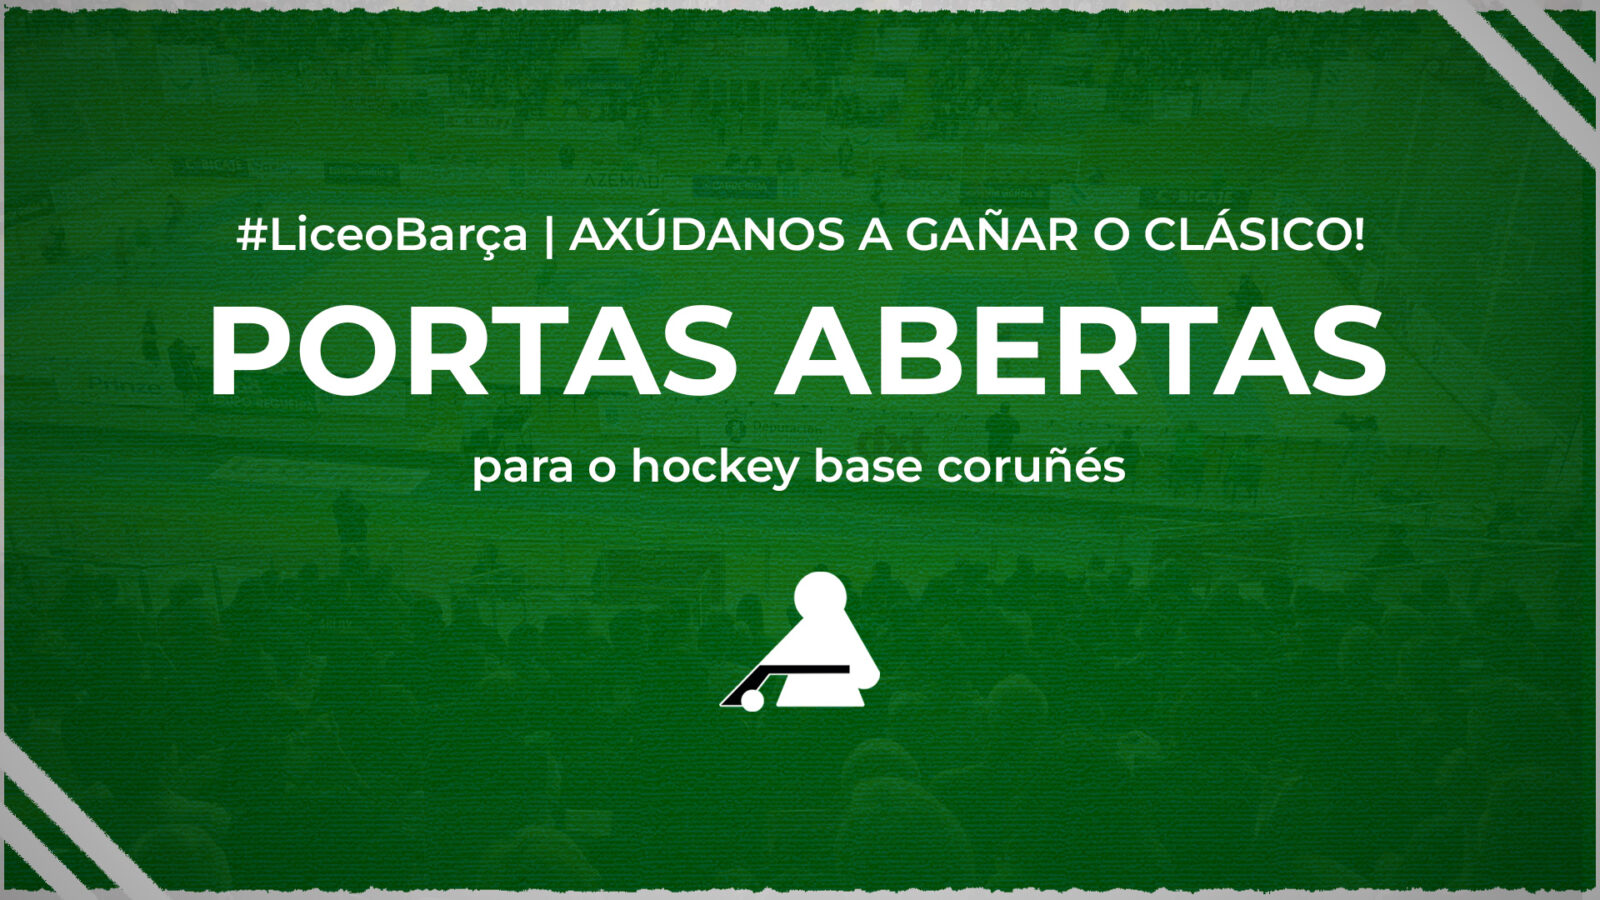 ¡Ayúdanos a ganar el Clásico! Puertas abiertas para la base del hockey coruñés